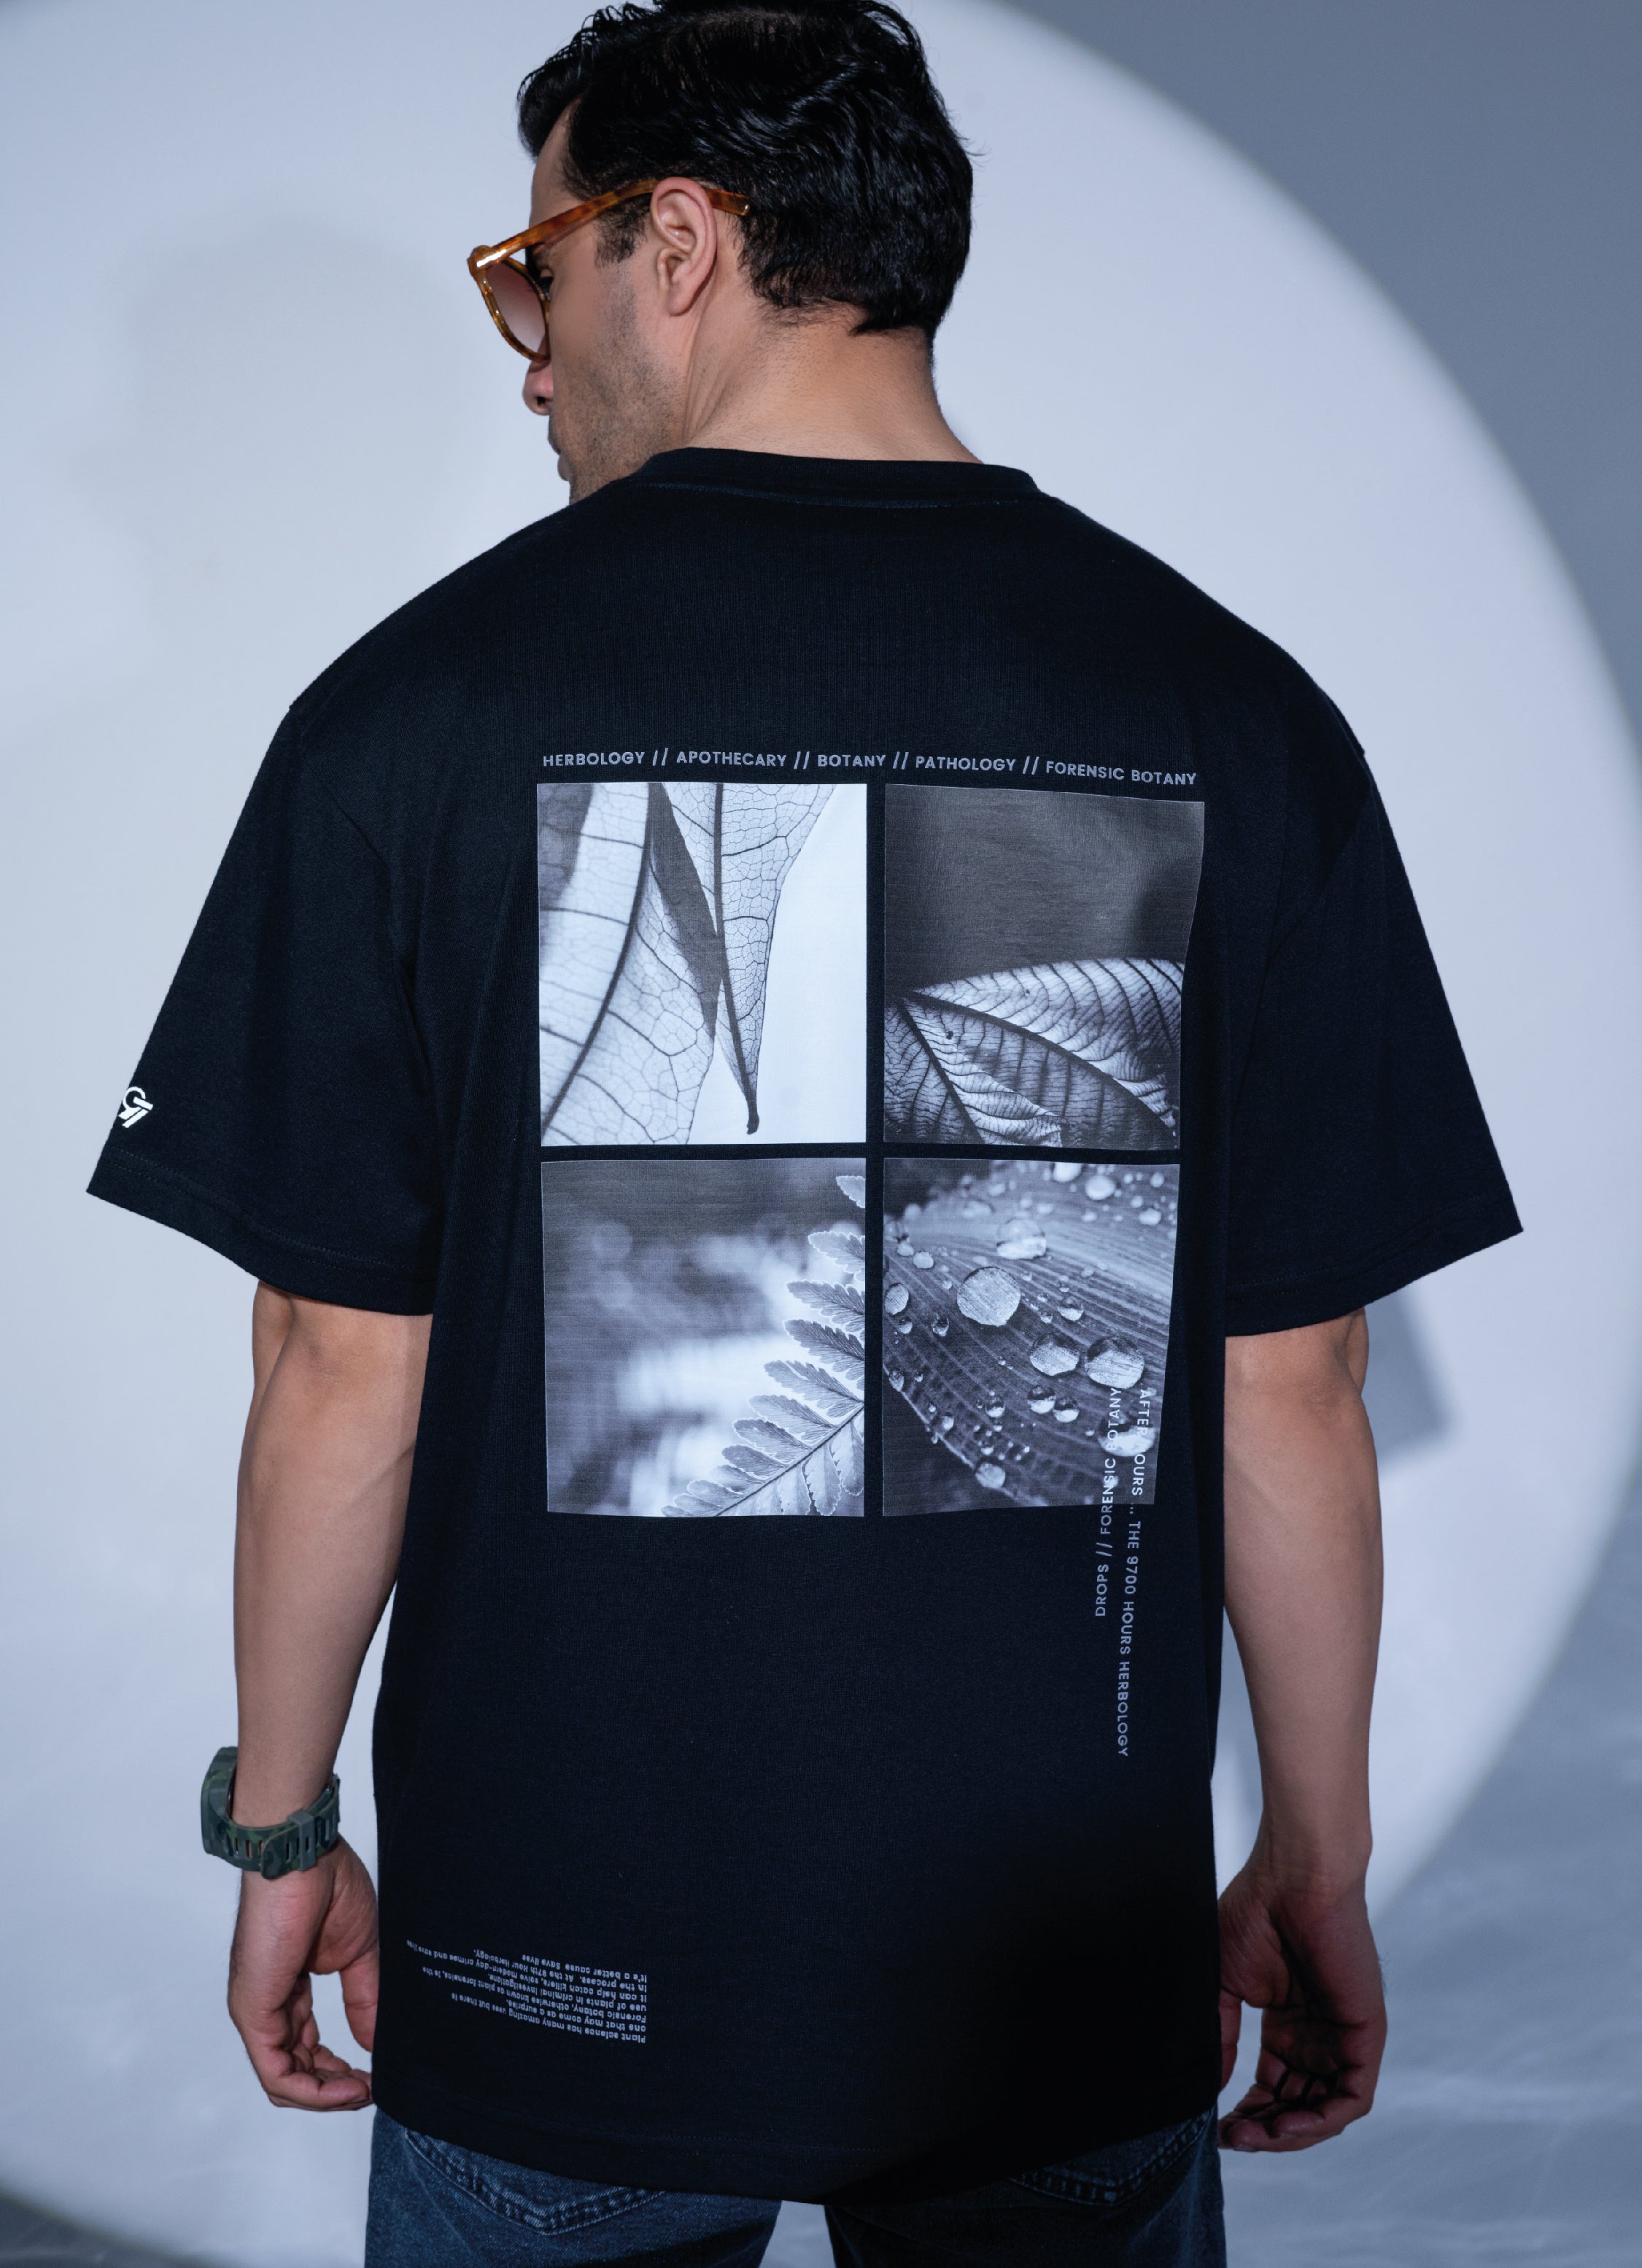 Buy Herbology Botany Image Graphic Oversized T-shirt - Black Tshirt